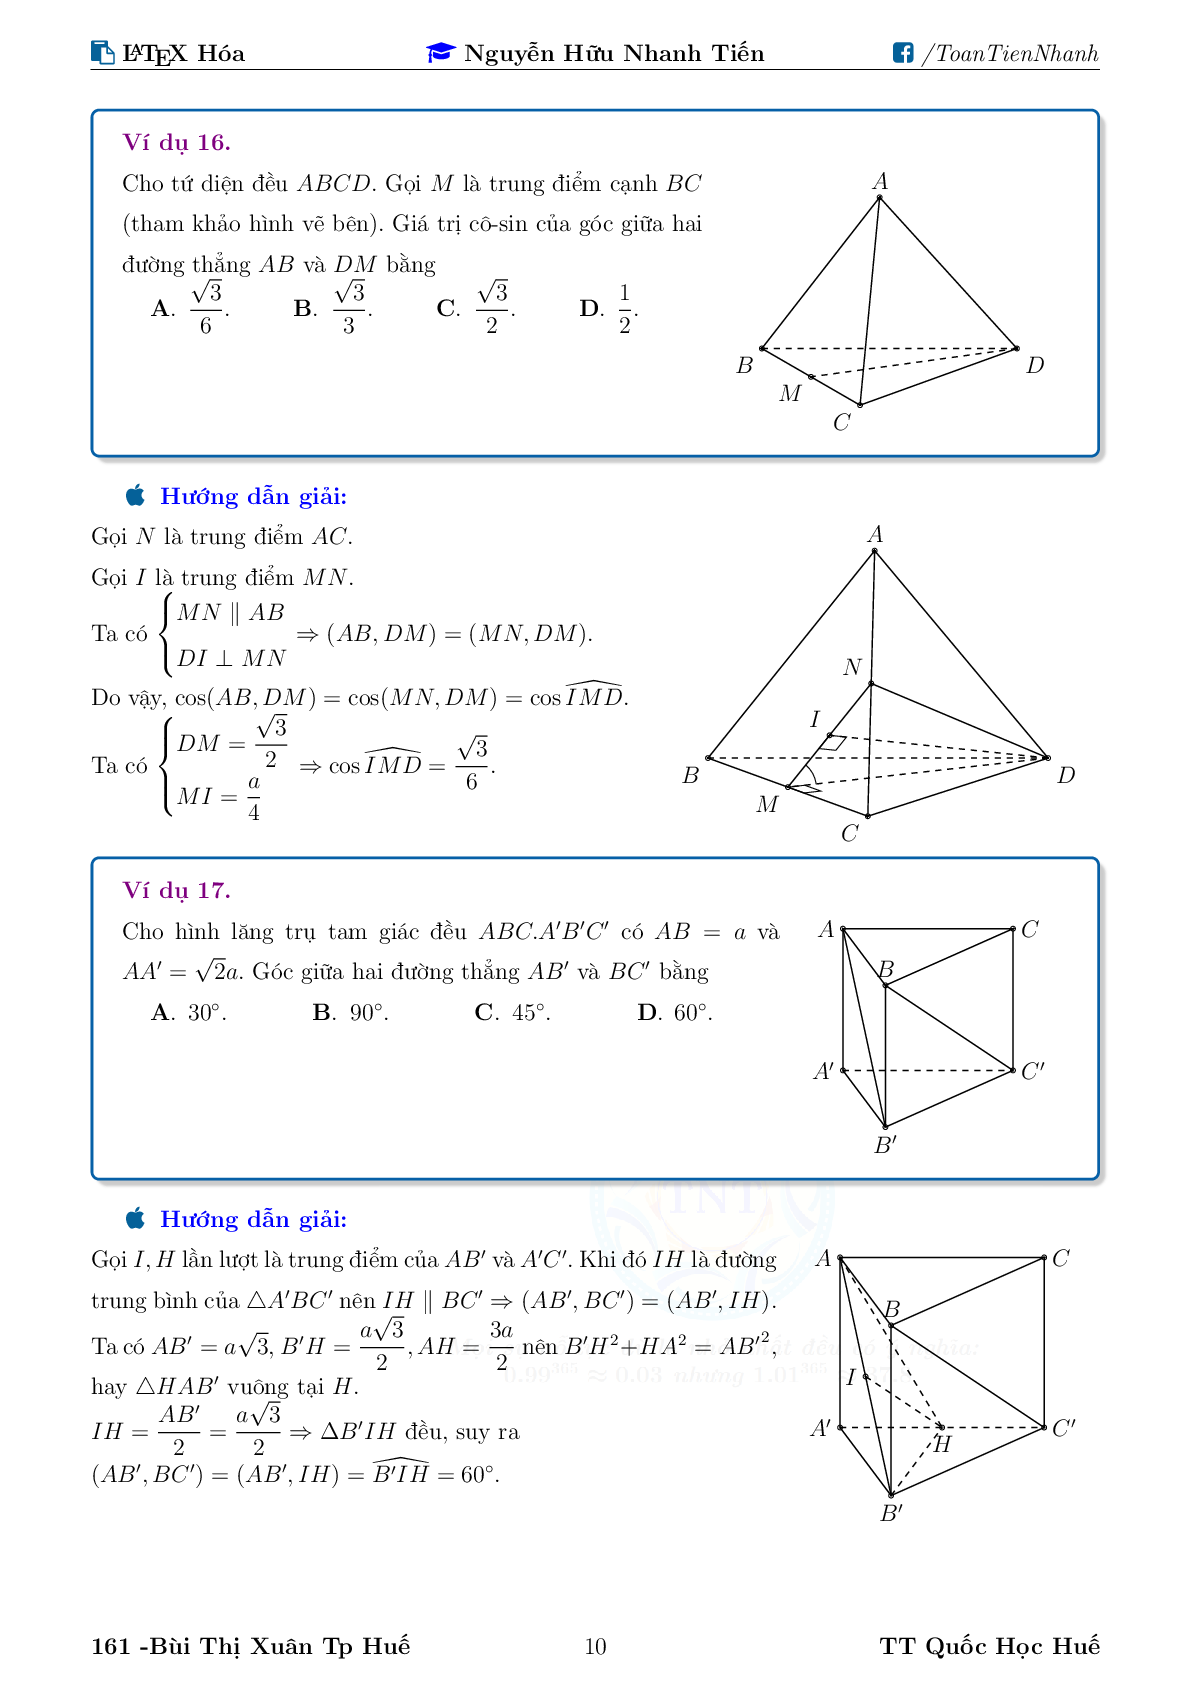 Chuyên đề về góc và khoảng cách trong không gian (trang 10)